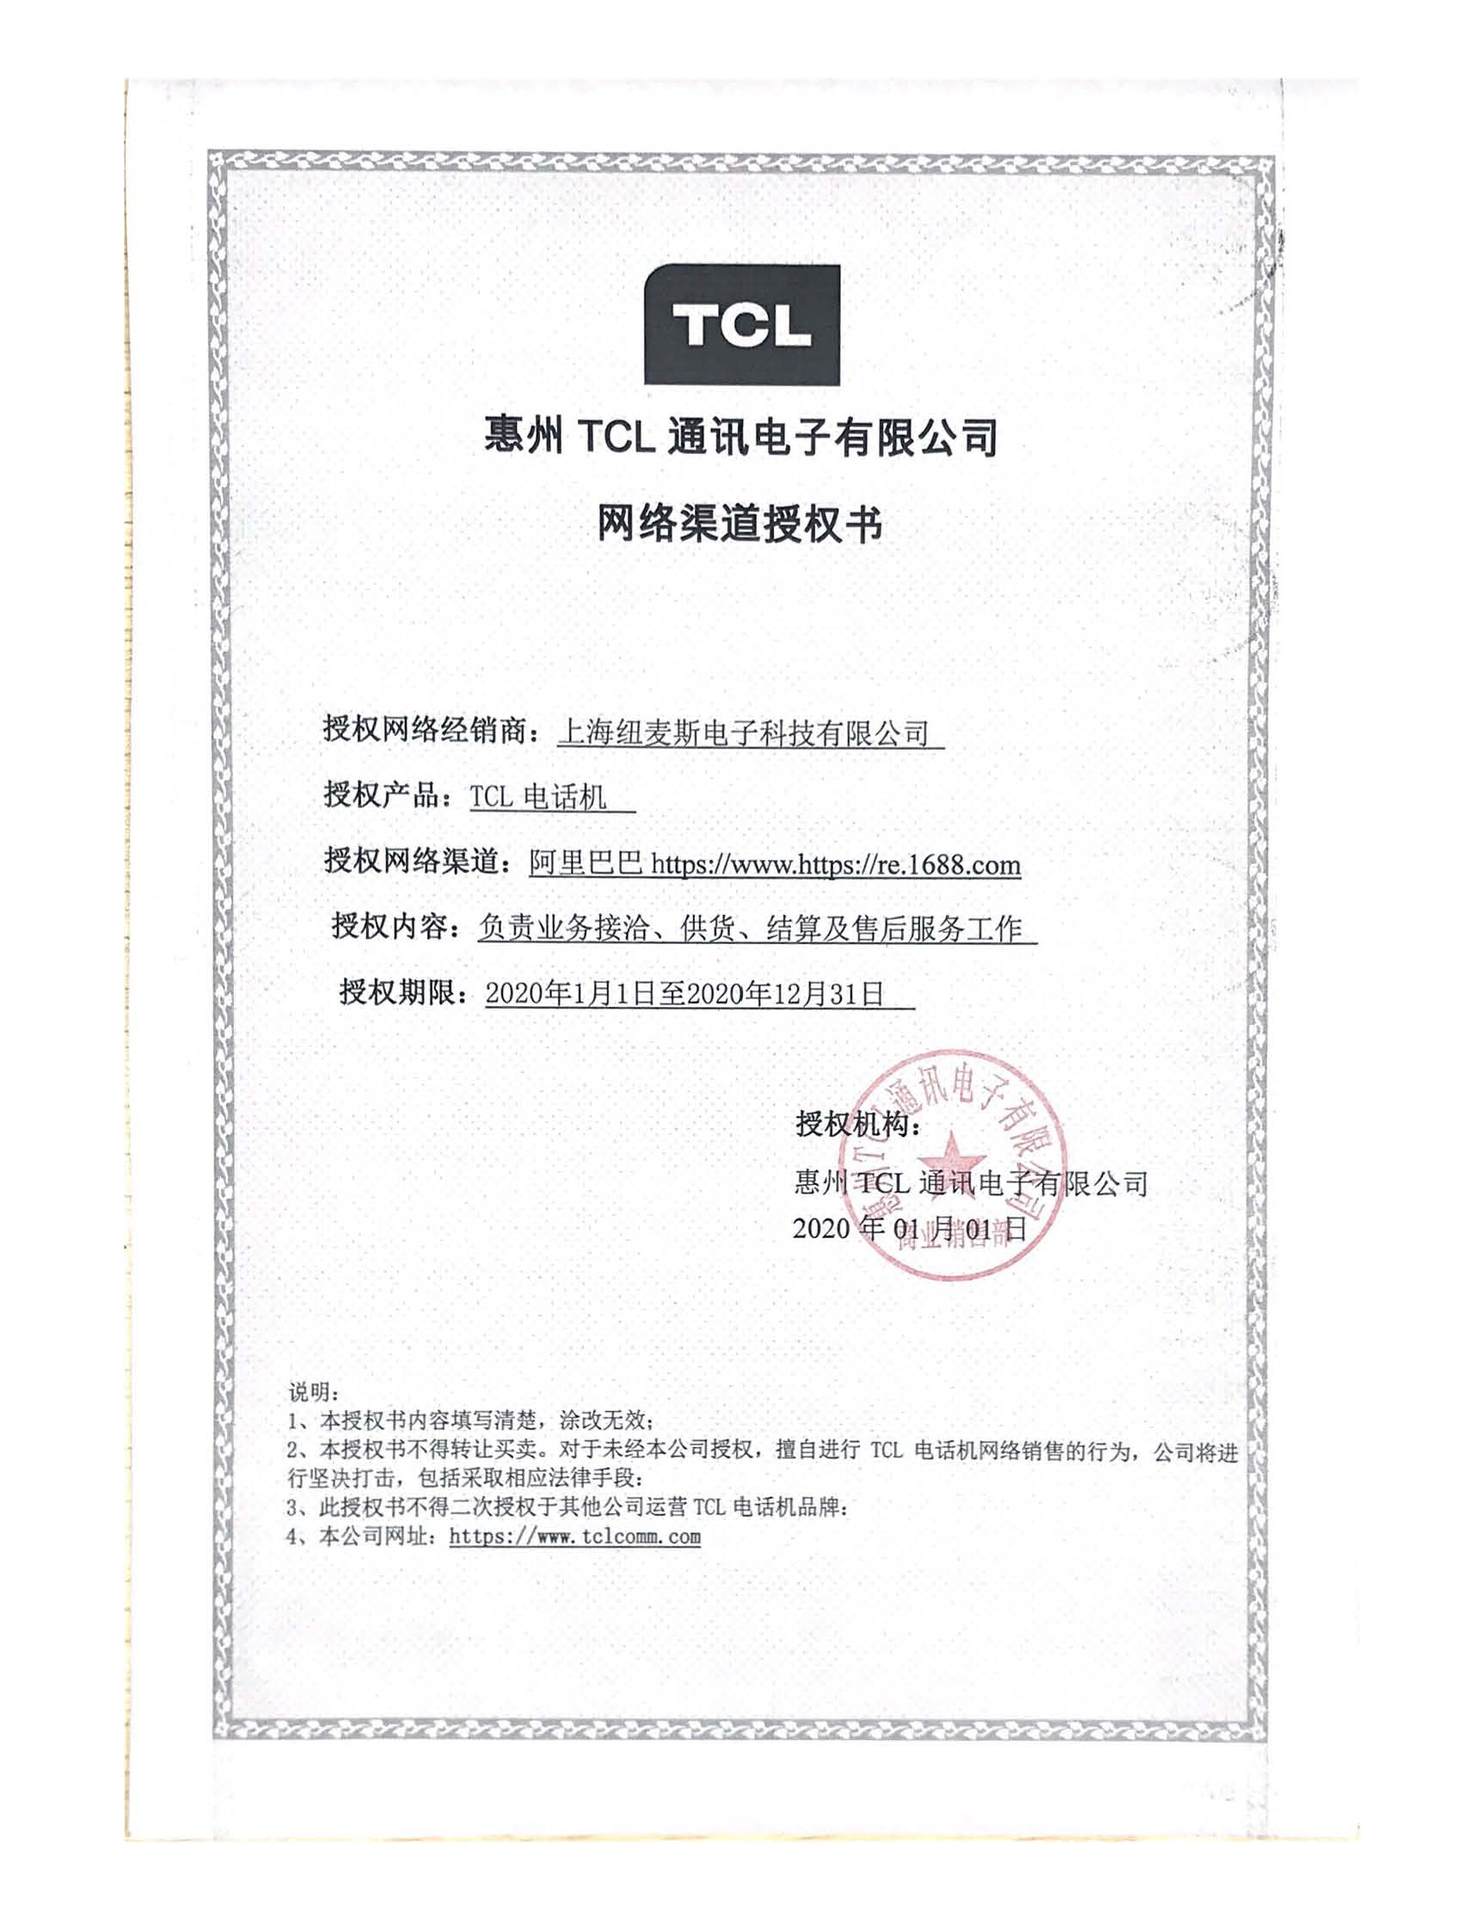 TCL-1688-2020.jpg